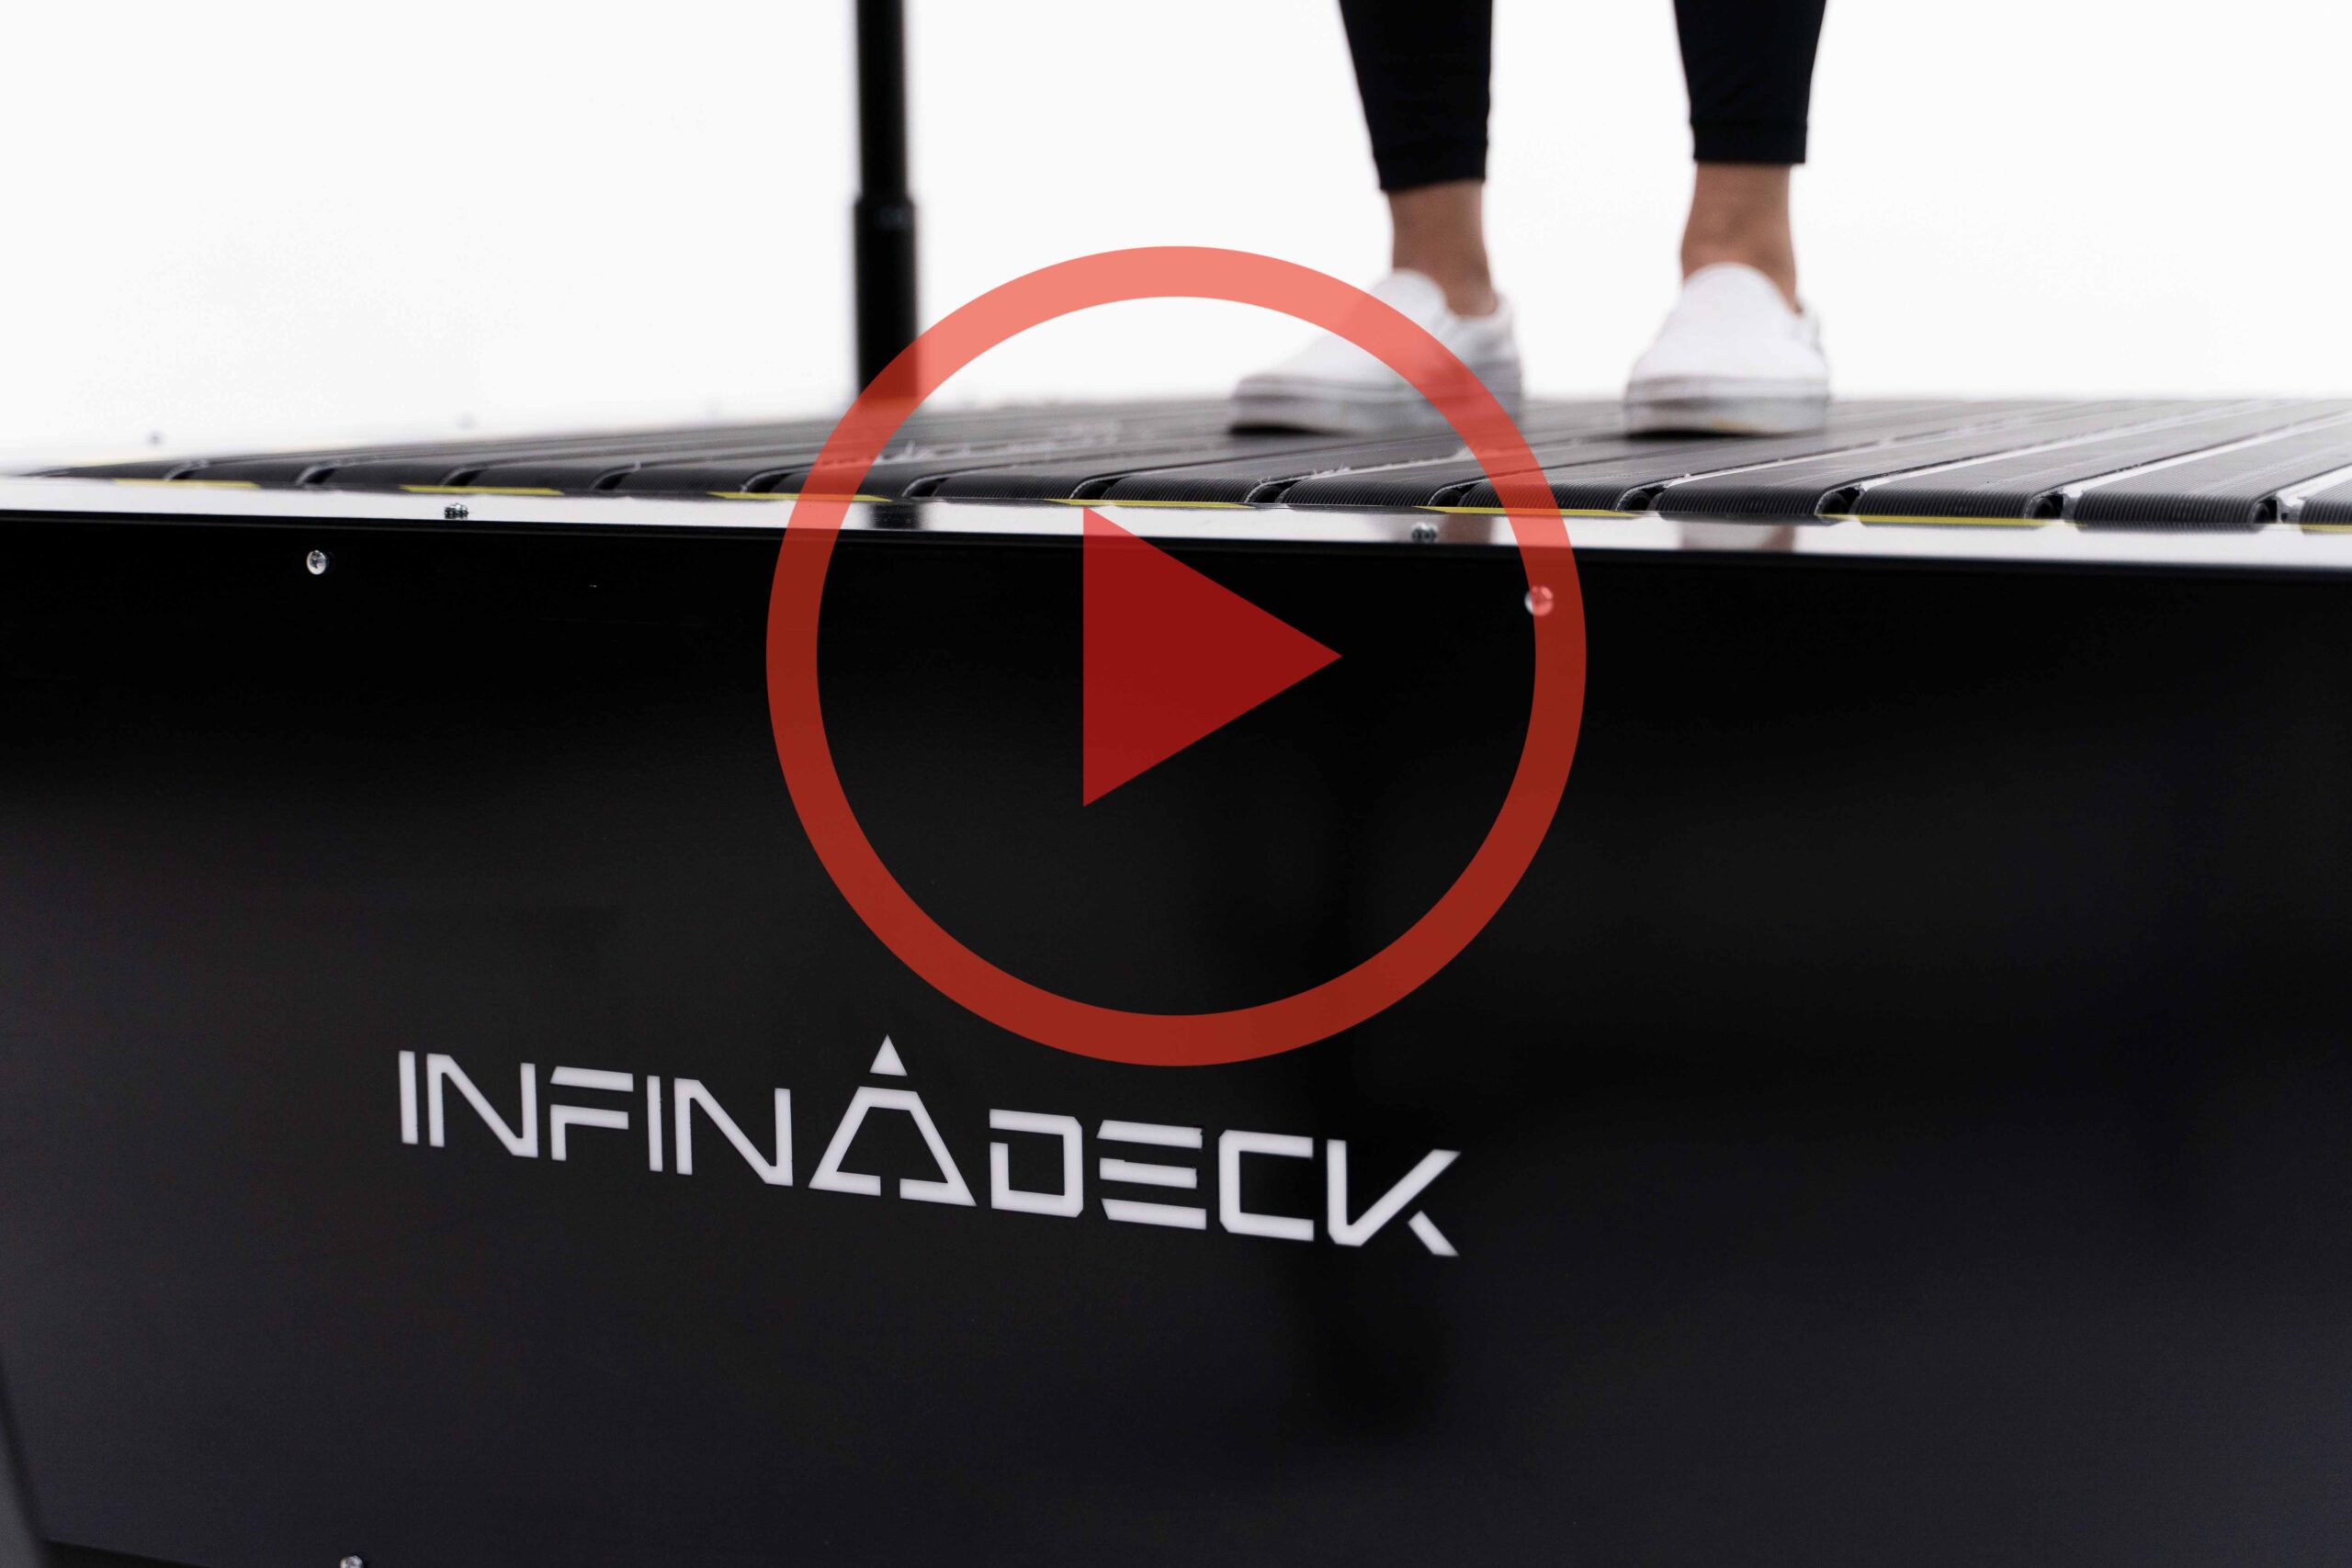 The Only True Omnidirectional Treadmill | VR Treadmill | Infinadeck